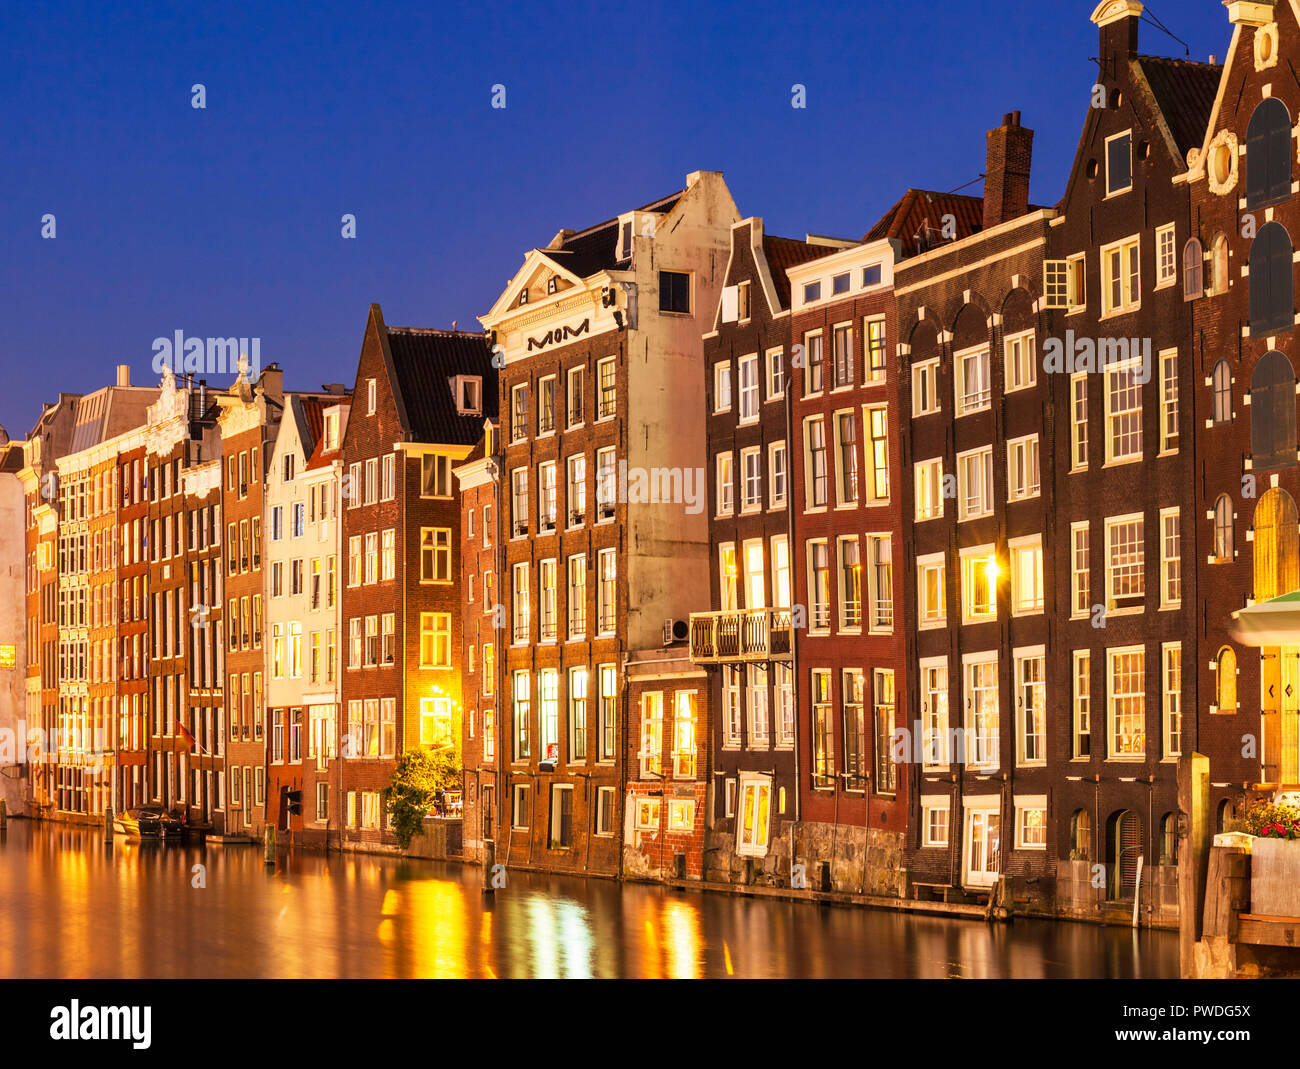 Case di Amsterdam su Damrak Illuminato illuminato di notte case con architettura olandese dal canal Amsterdam Olanda Paesi Bassi EU Europe Foto Stock